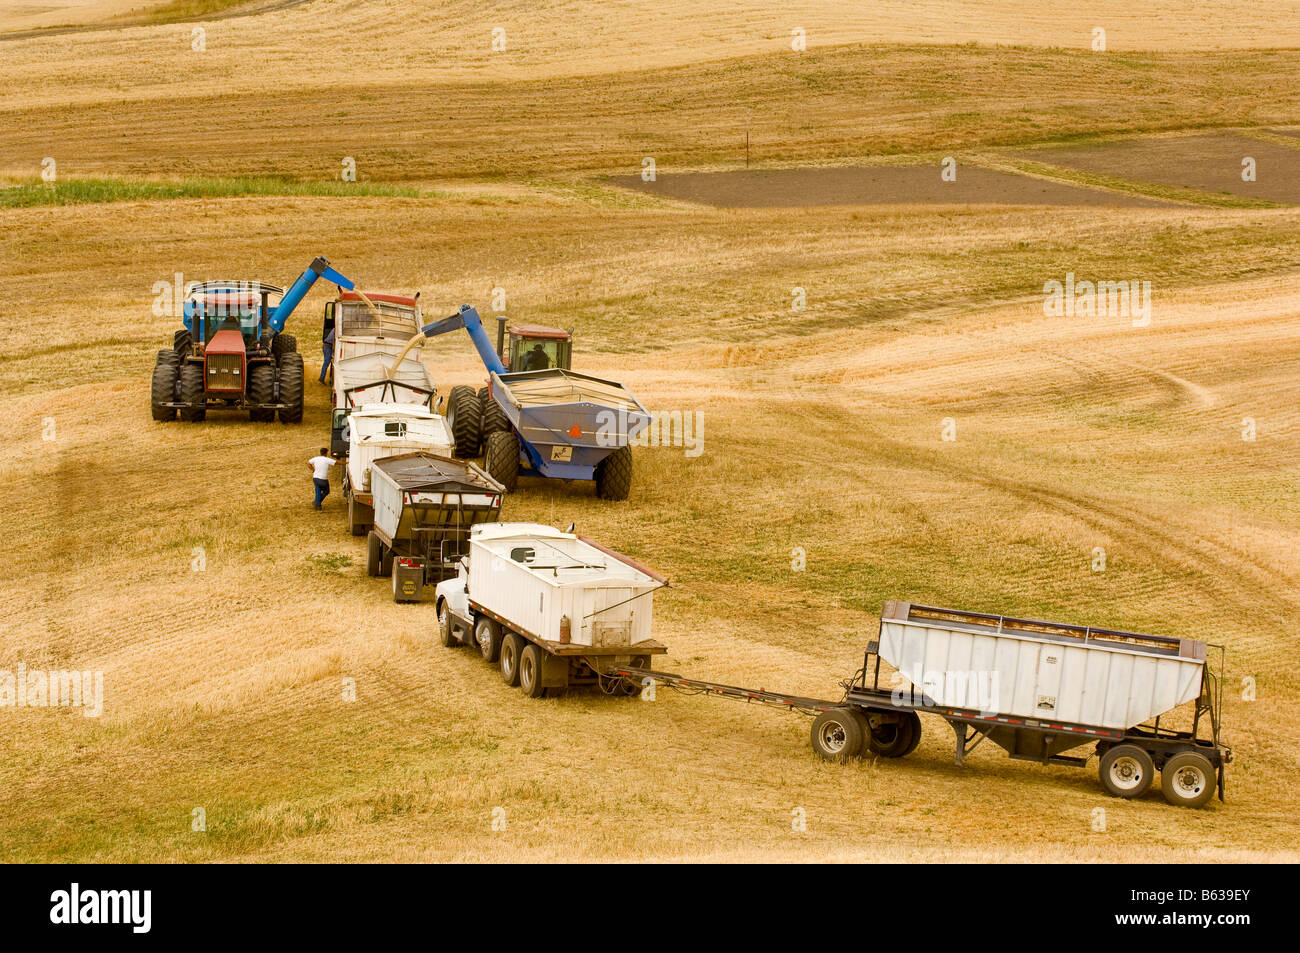 Getreidekipper Line-up von Traktoren Abschleppen Getreide Wagen in